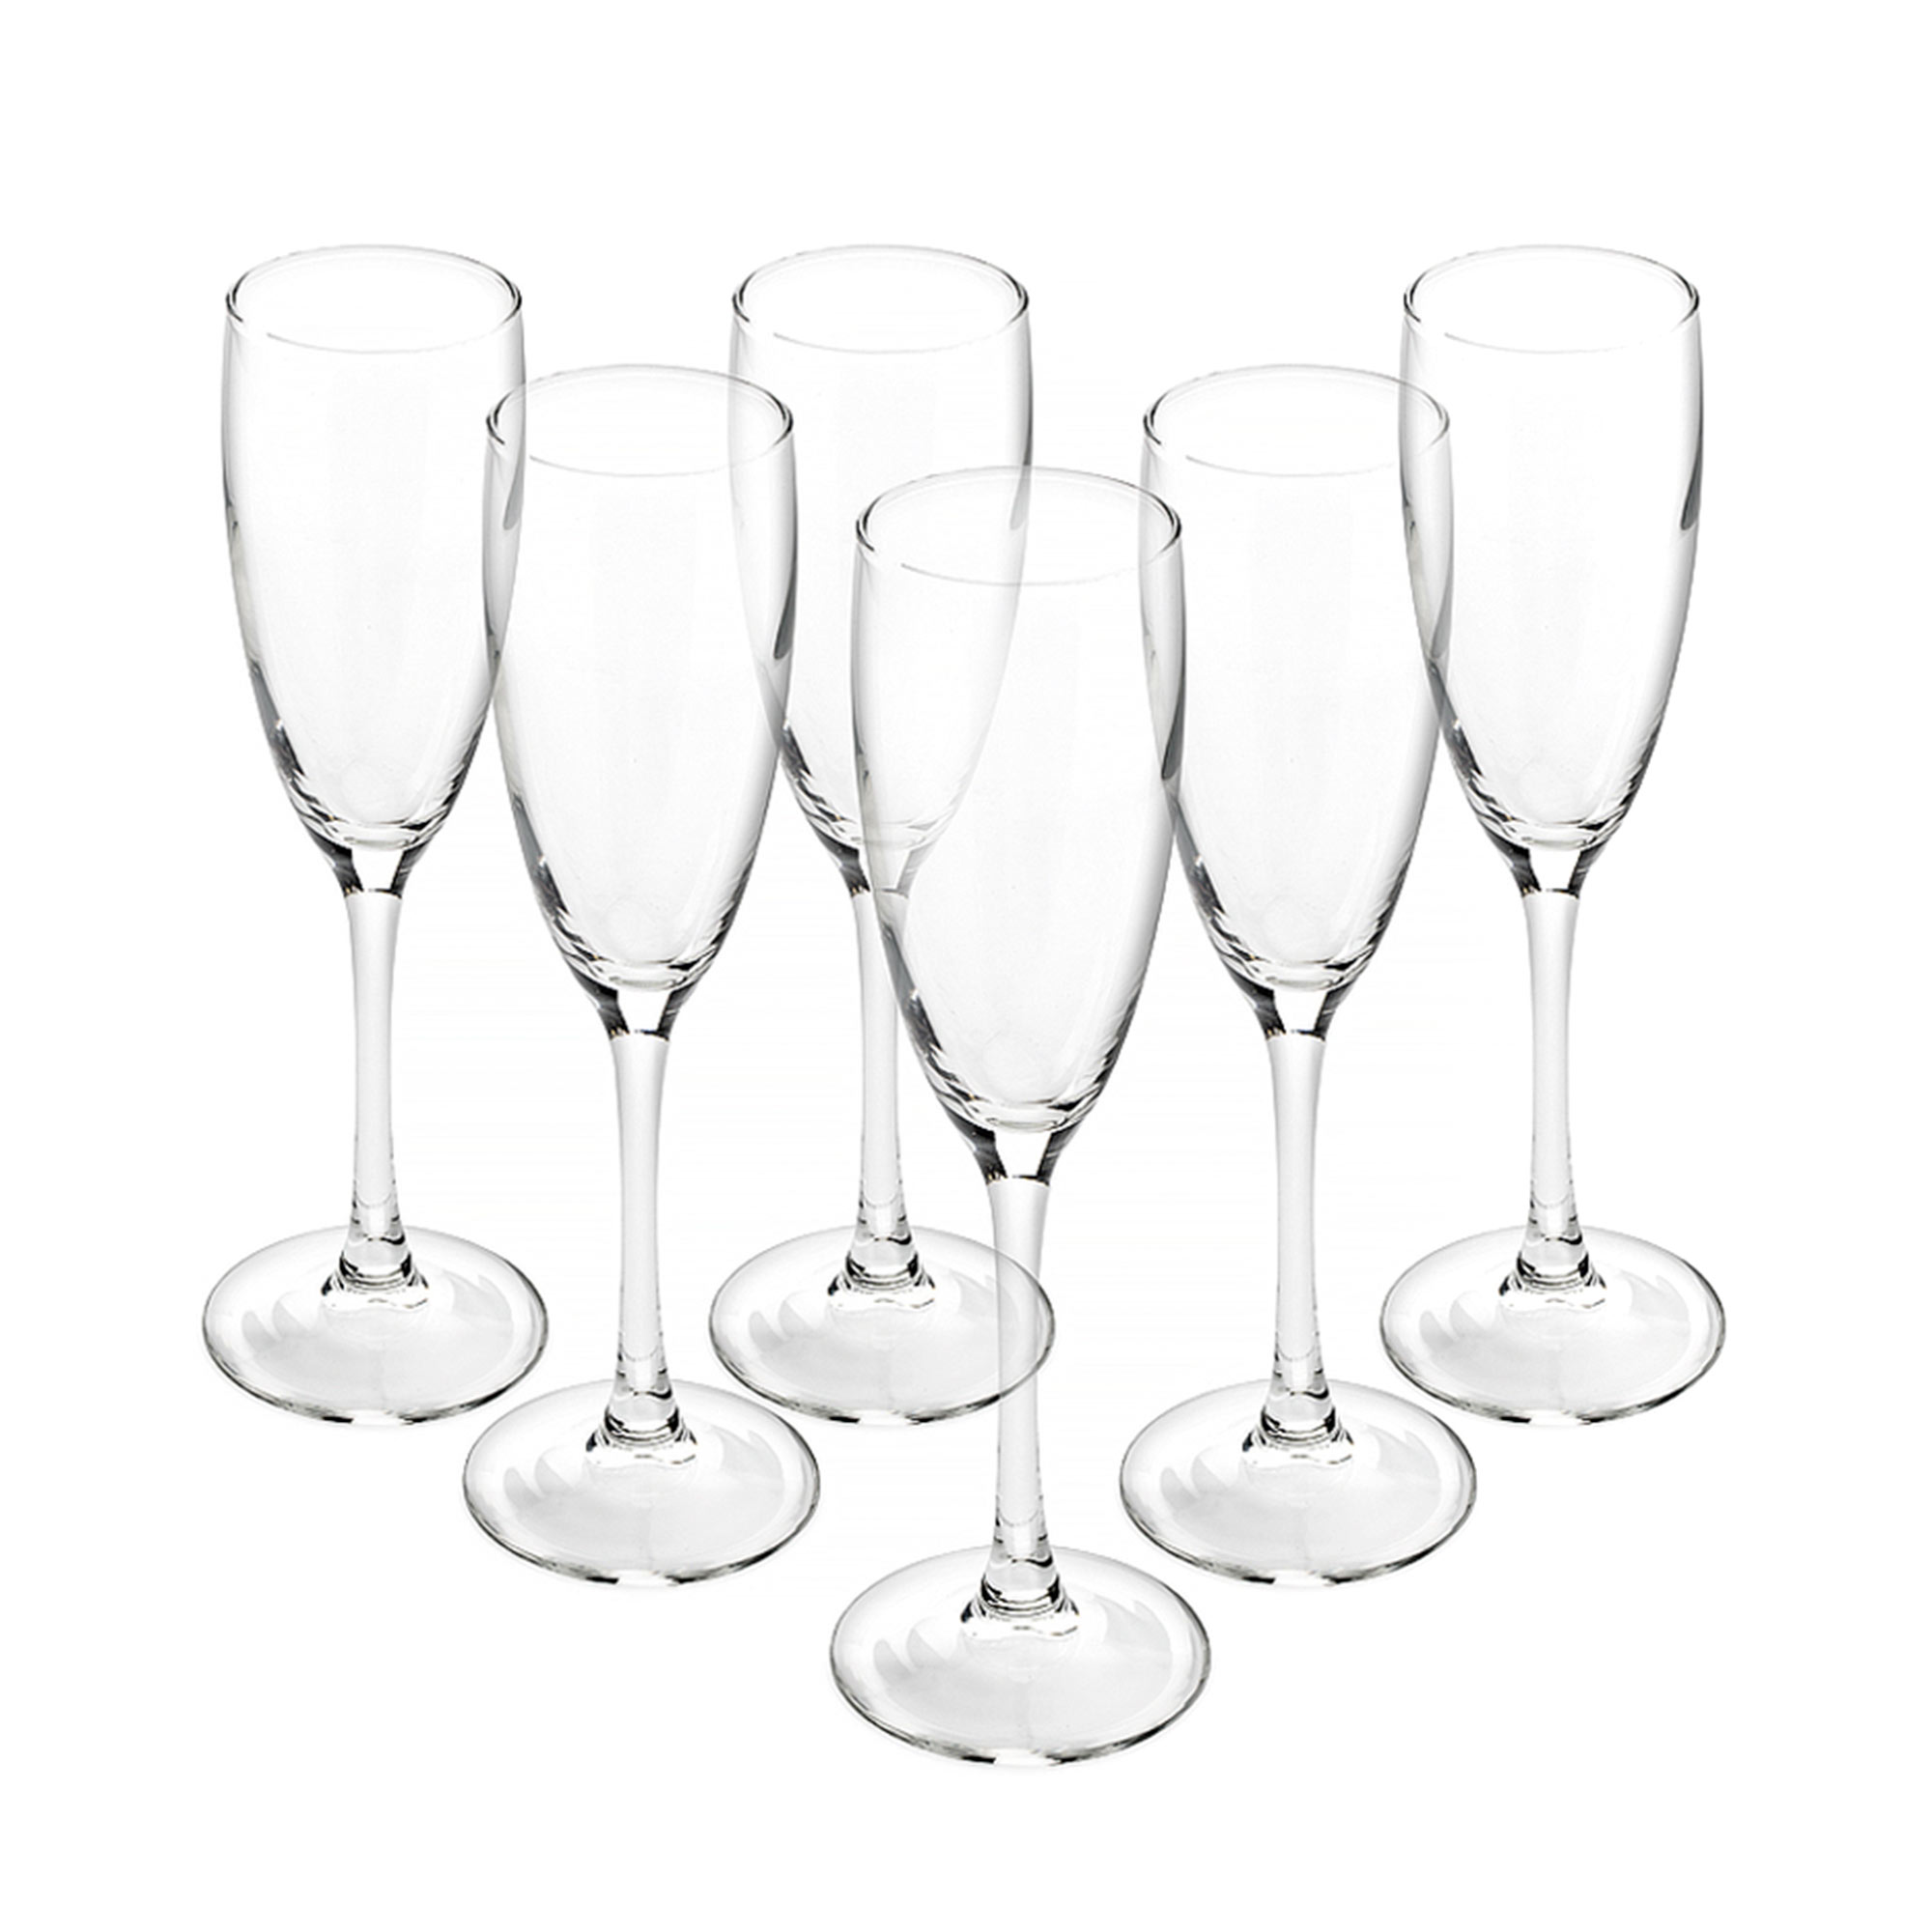 Набор бокалов для шампанского Luminarc Signature/Эталон 170 мл 6 шт набор бокалов для шампанского из 6 шт черное море обмре 170 мл